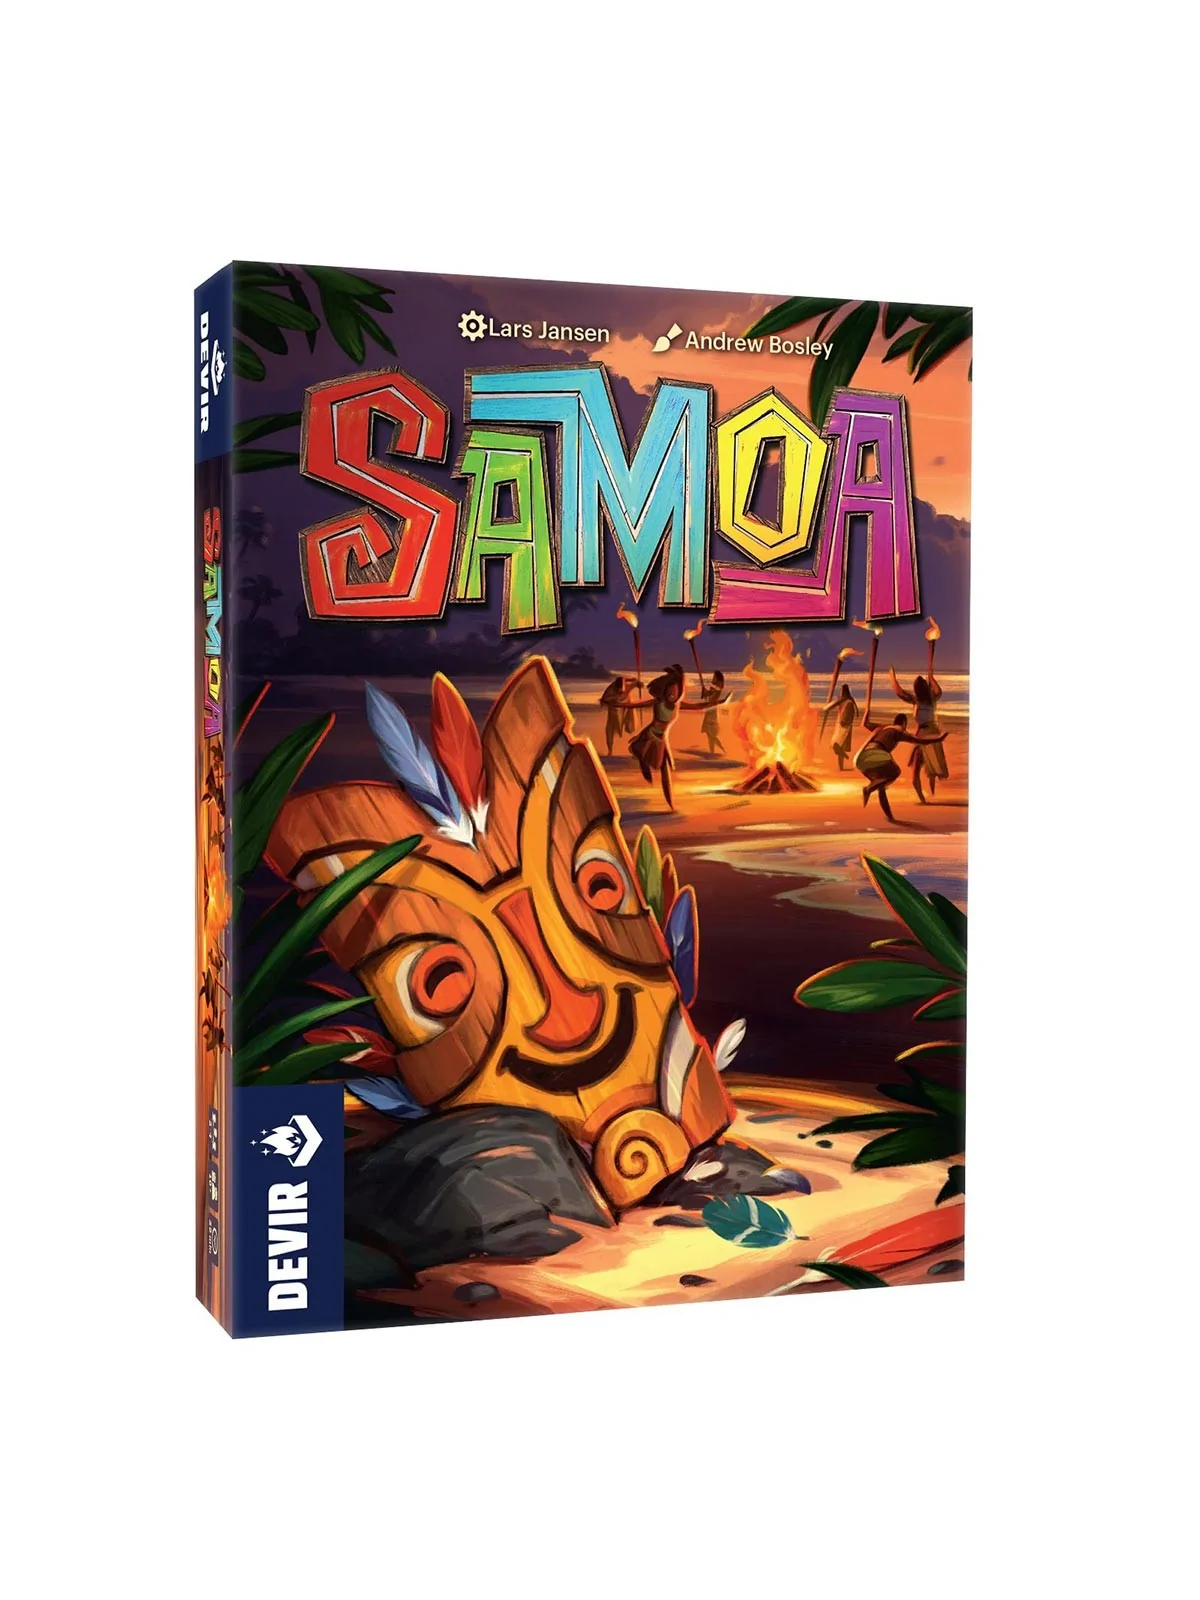 Comprar Samoa barato al mejor precio 8,49 € de Devir